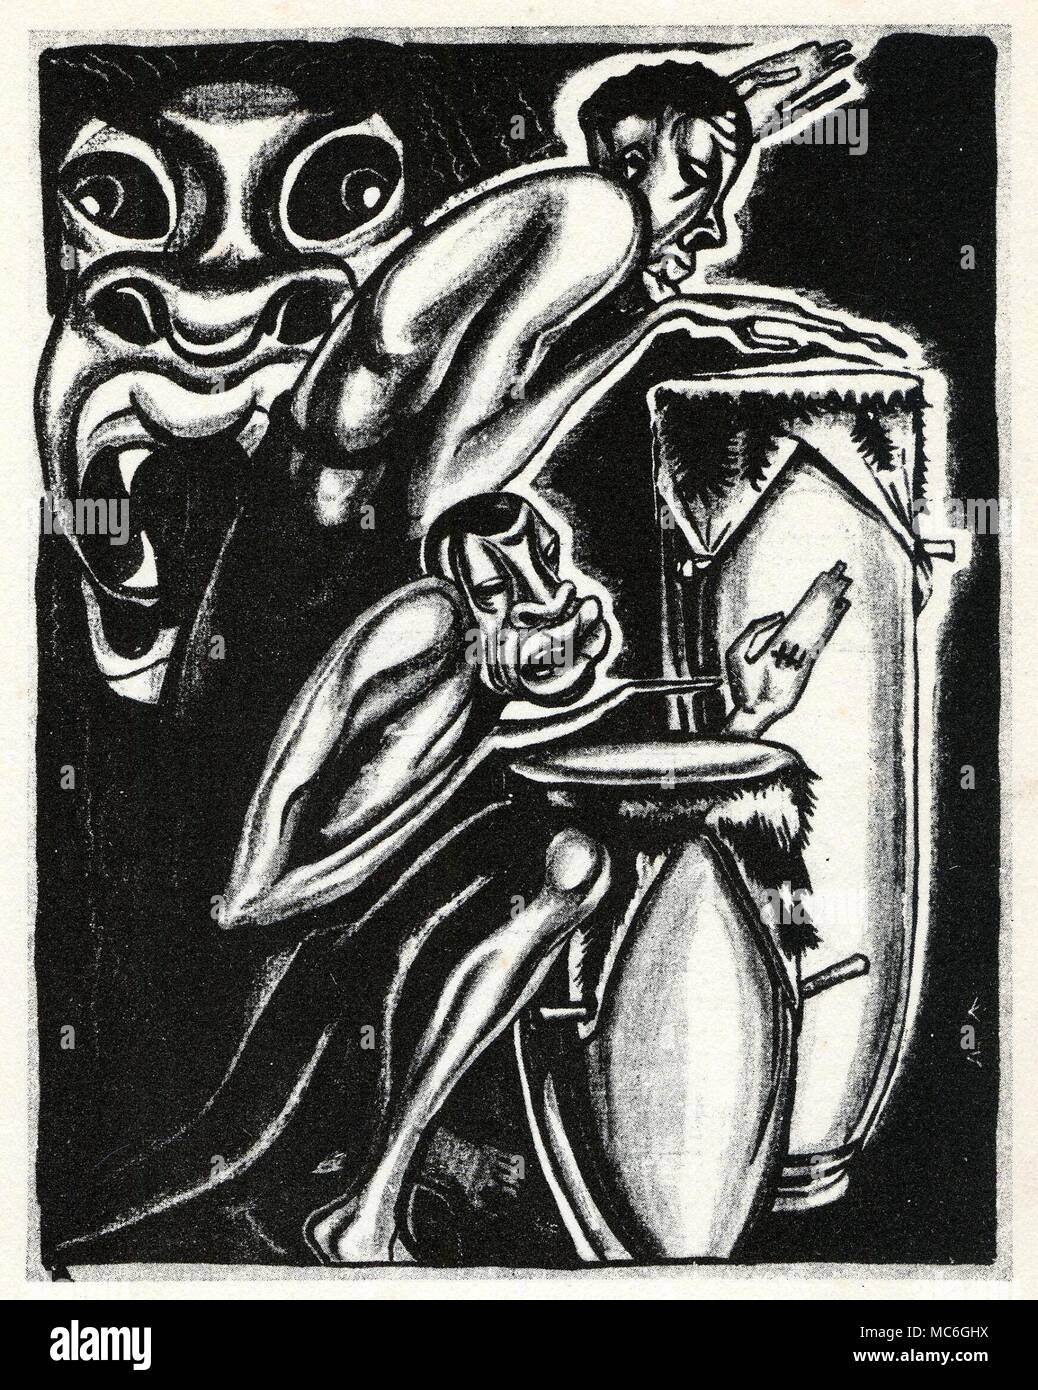 VOODOO - RADA Rada Drums Drums während der Vorbereitung für eine Voodoo Ritual gespielt wird vor dem Altar in der houmfort oder Mystery House. Abbildung von A.König, bei W.B. Seabrook, die magische Insel, 1929. Stockfoto